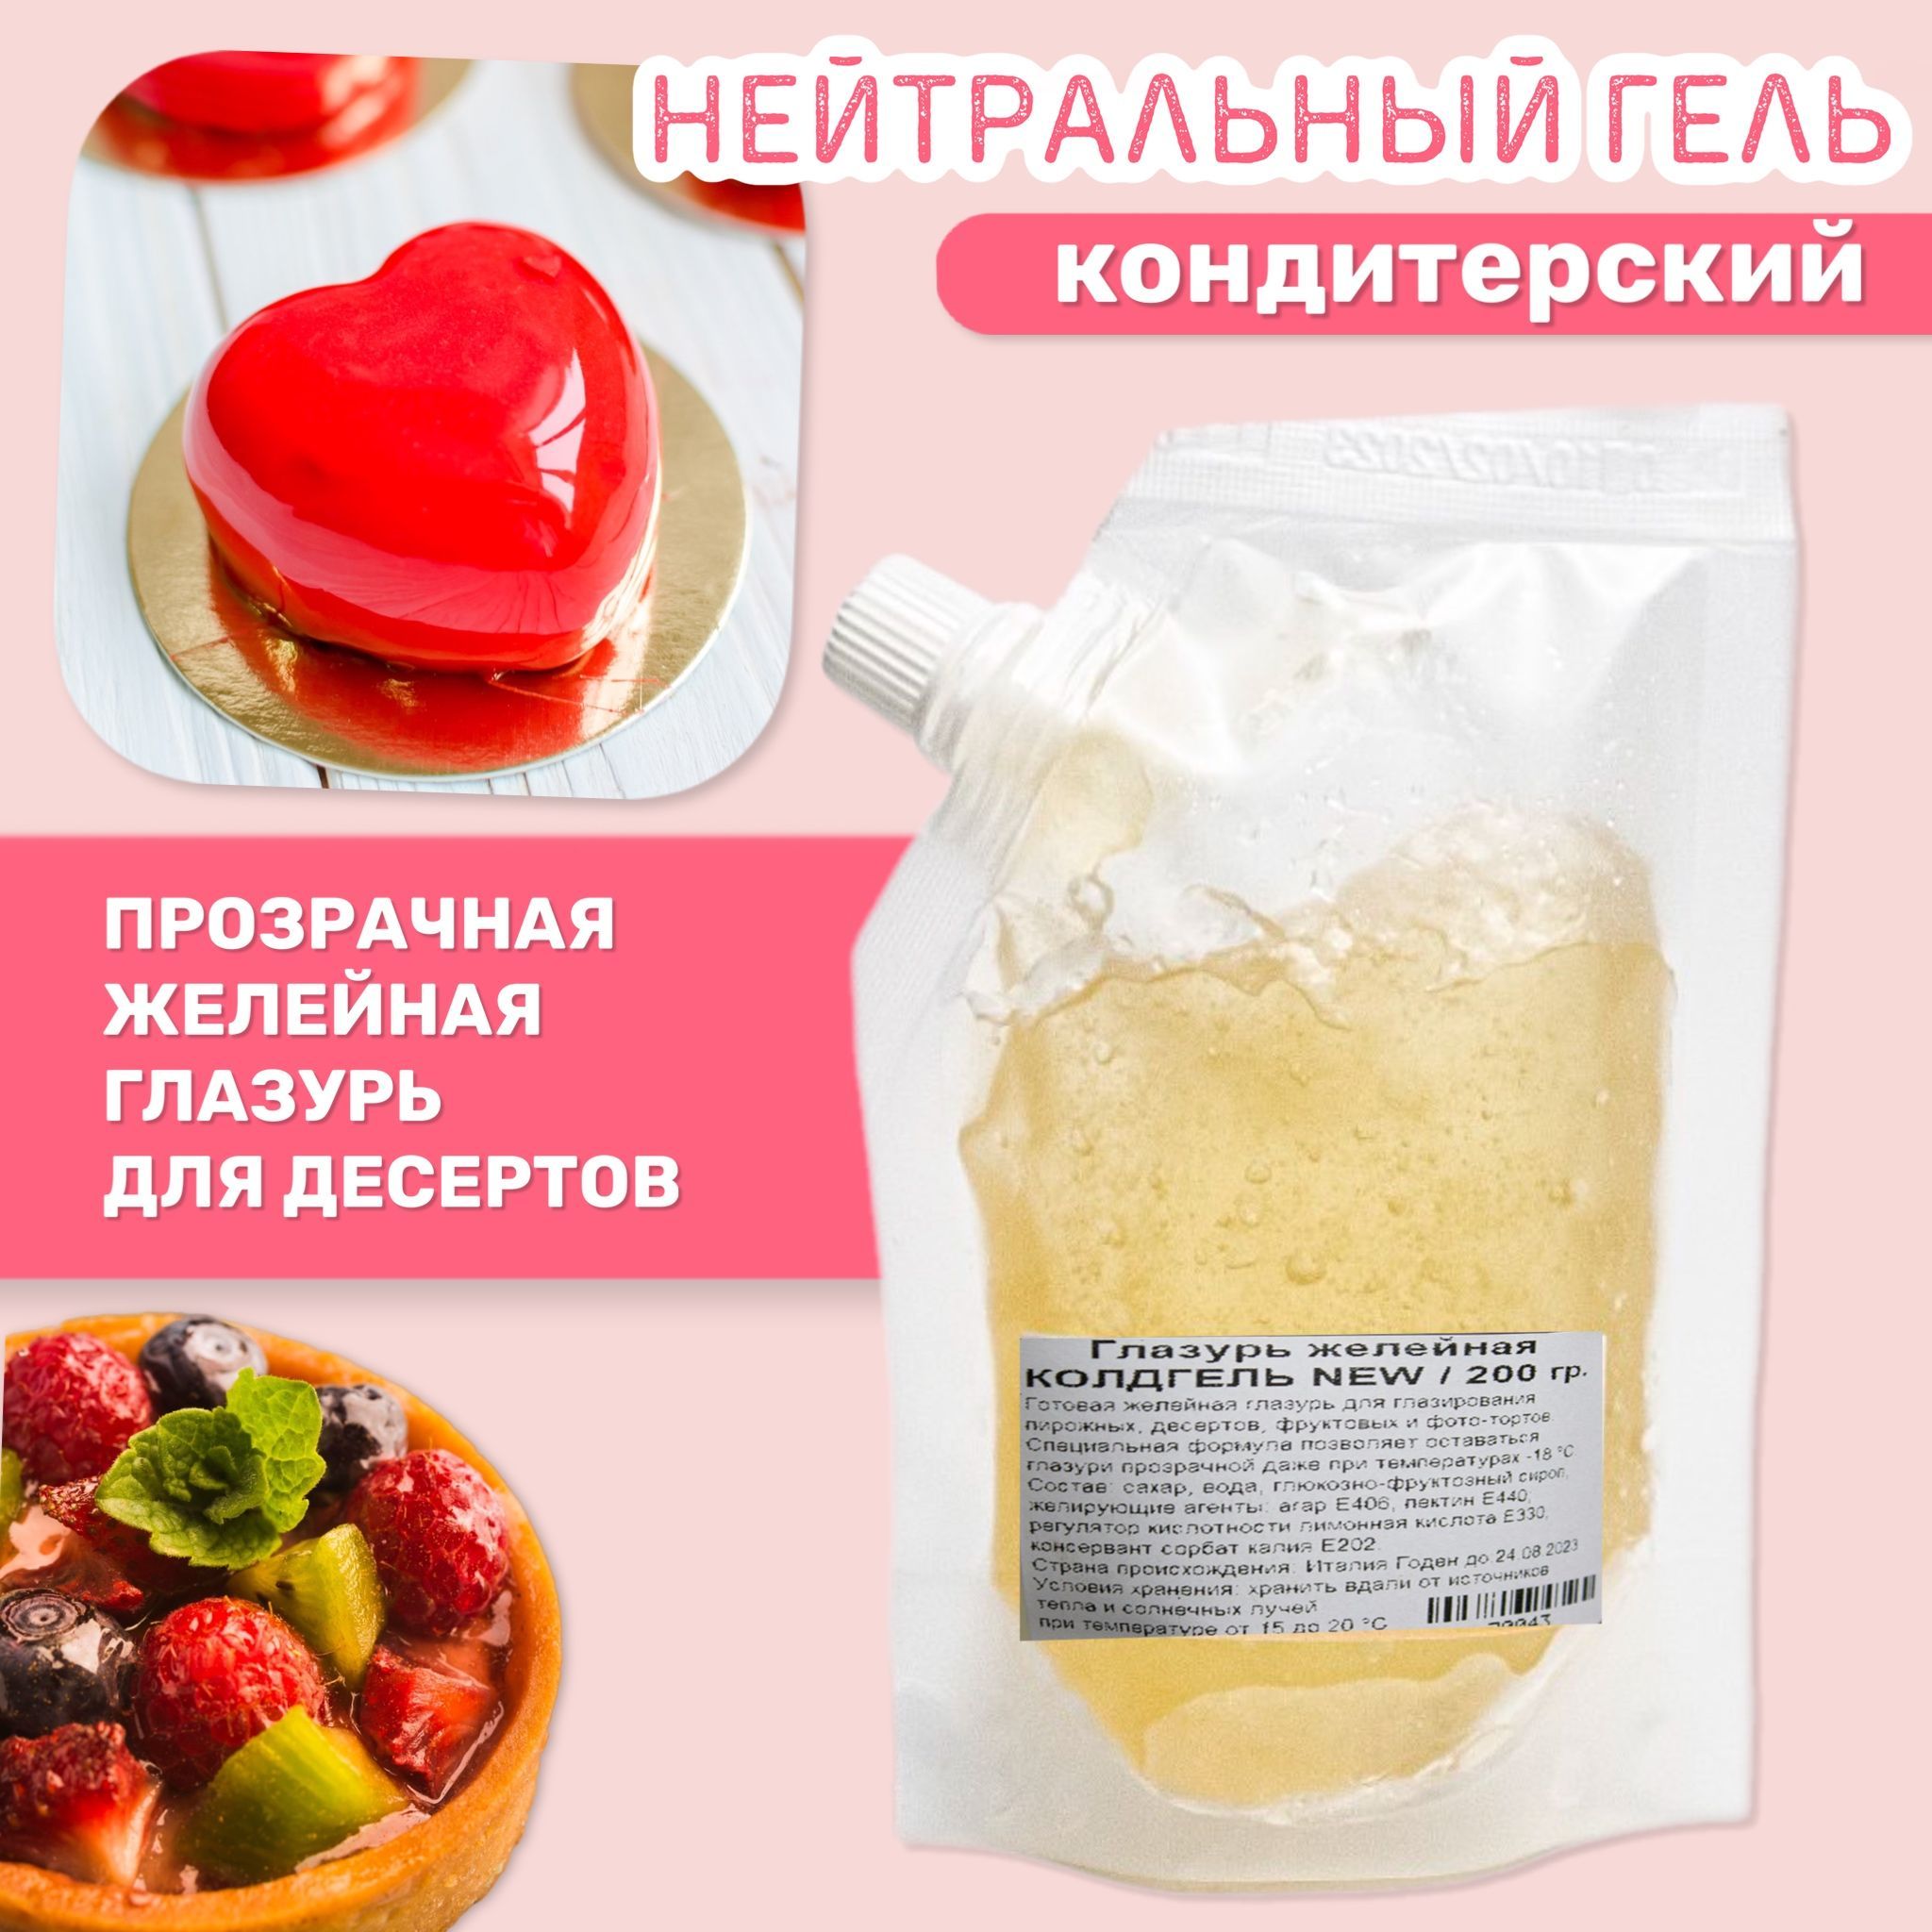 Гели и покрытия для кондитерский изделий, тортов купить в Новосибирске - Будем печь!